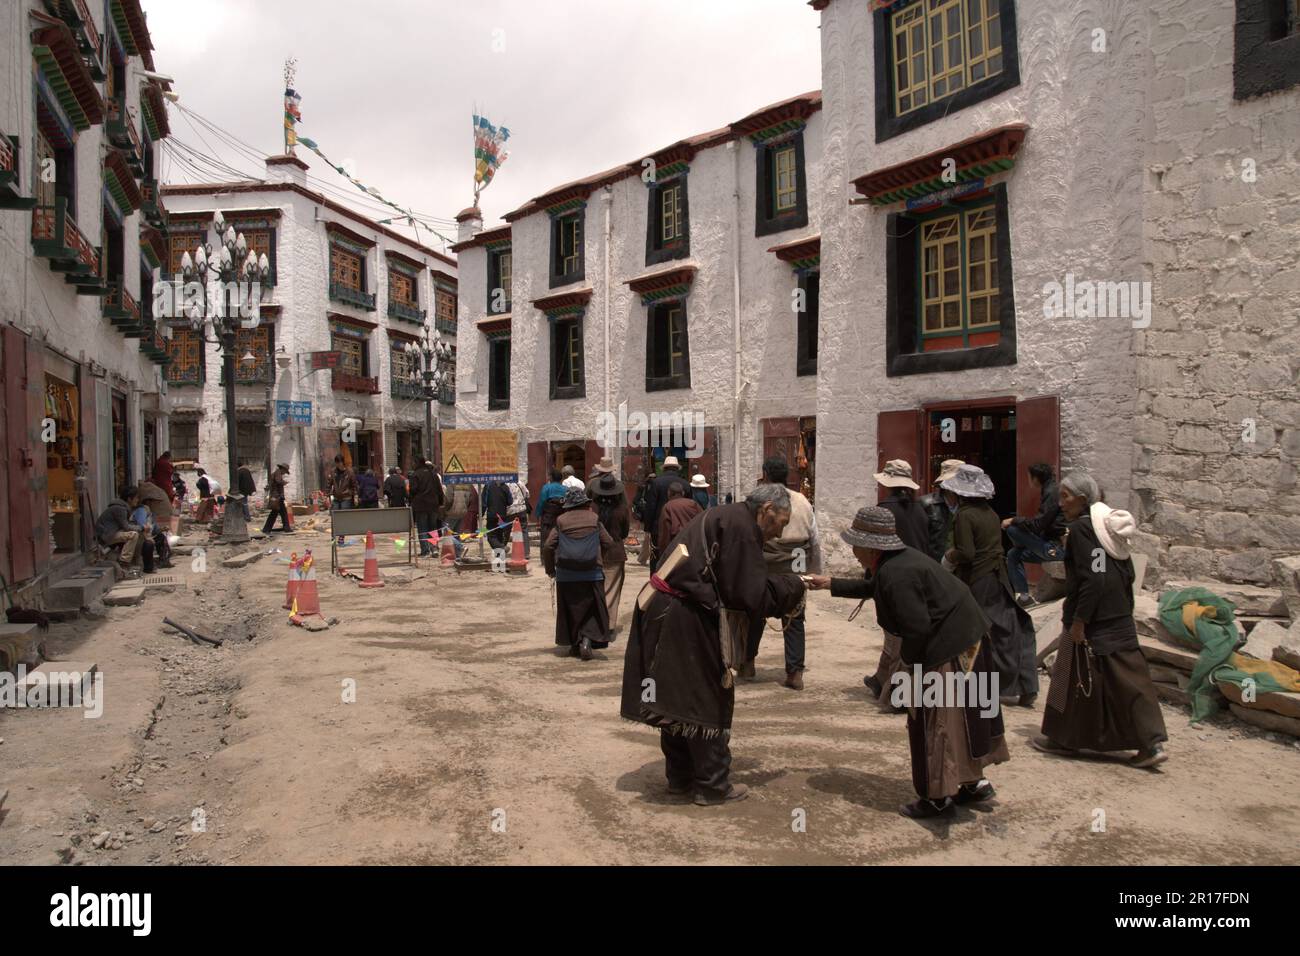 Volksrepublik China, Tibet, Lhasa: Pilger, die um das Barkhorkora des Jokhang spazieren und Almosen geben. Stockfoto